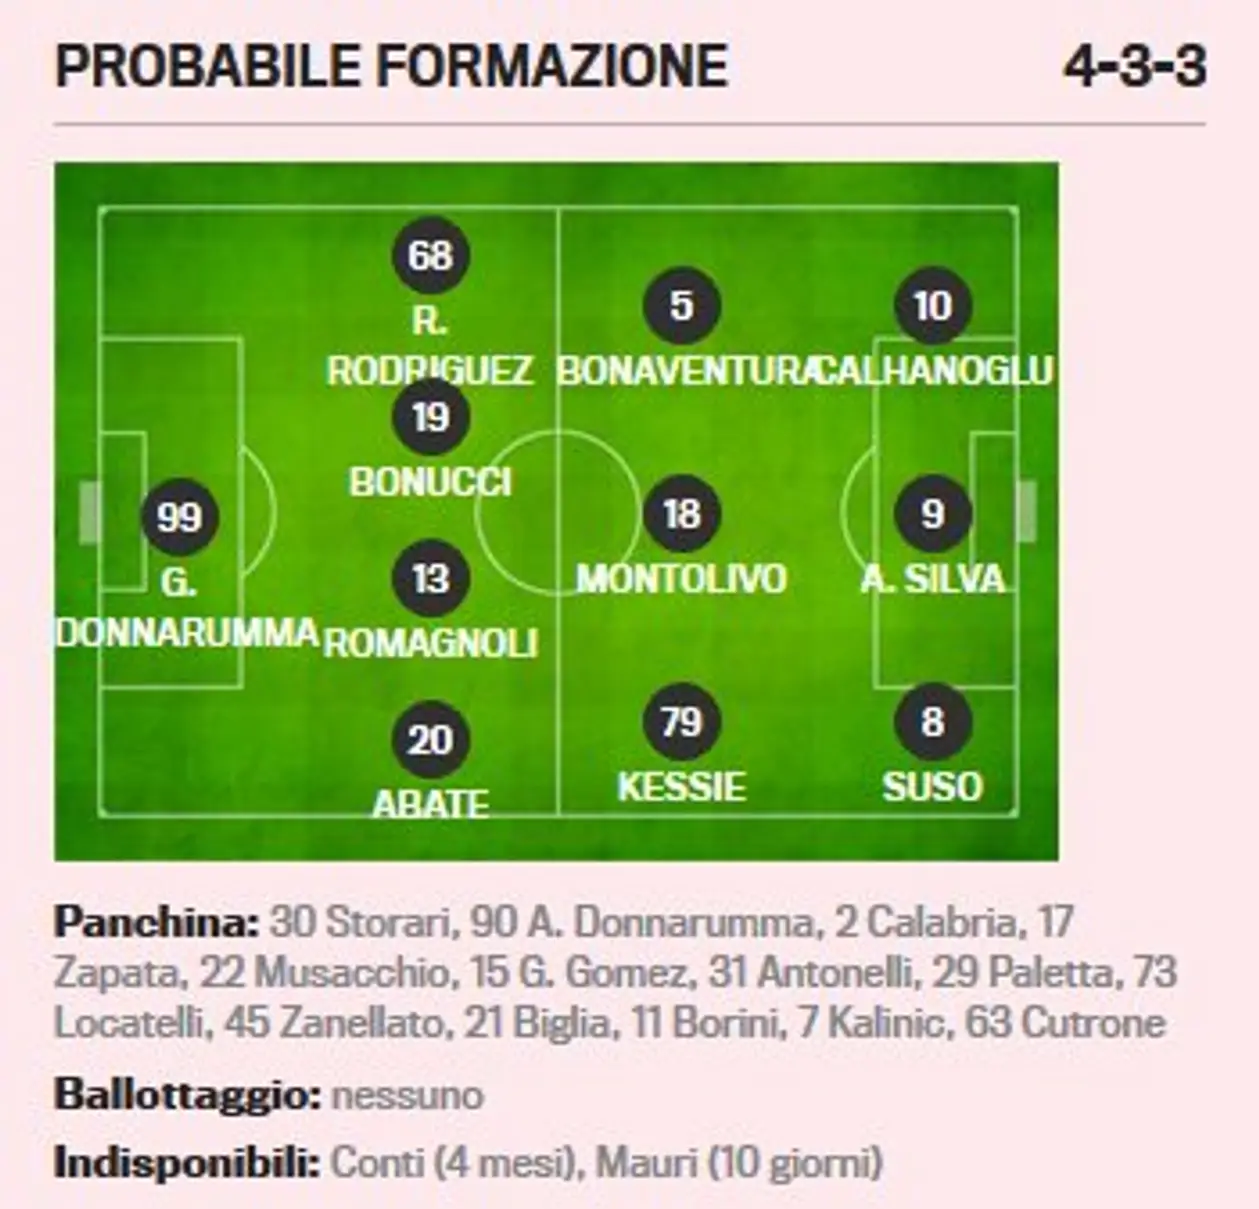 Вероятный стартовый состав «Милана» на матч против «Интера», версия GdS